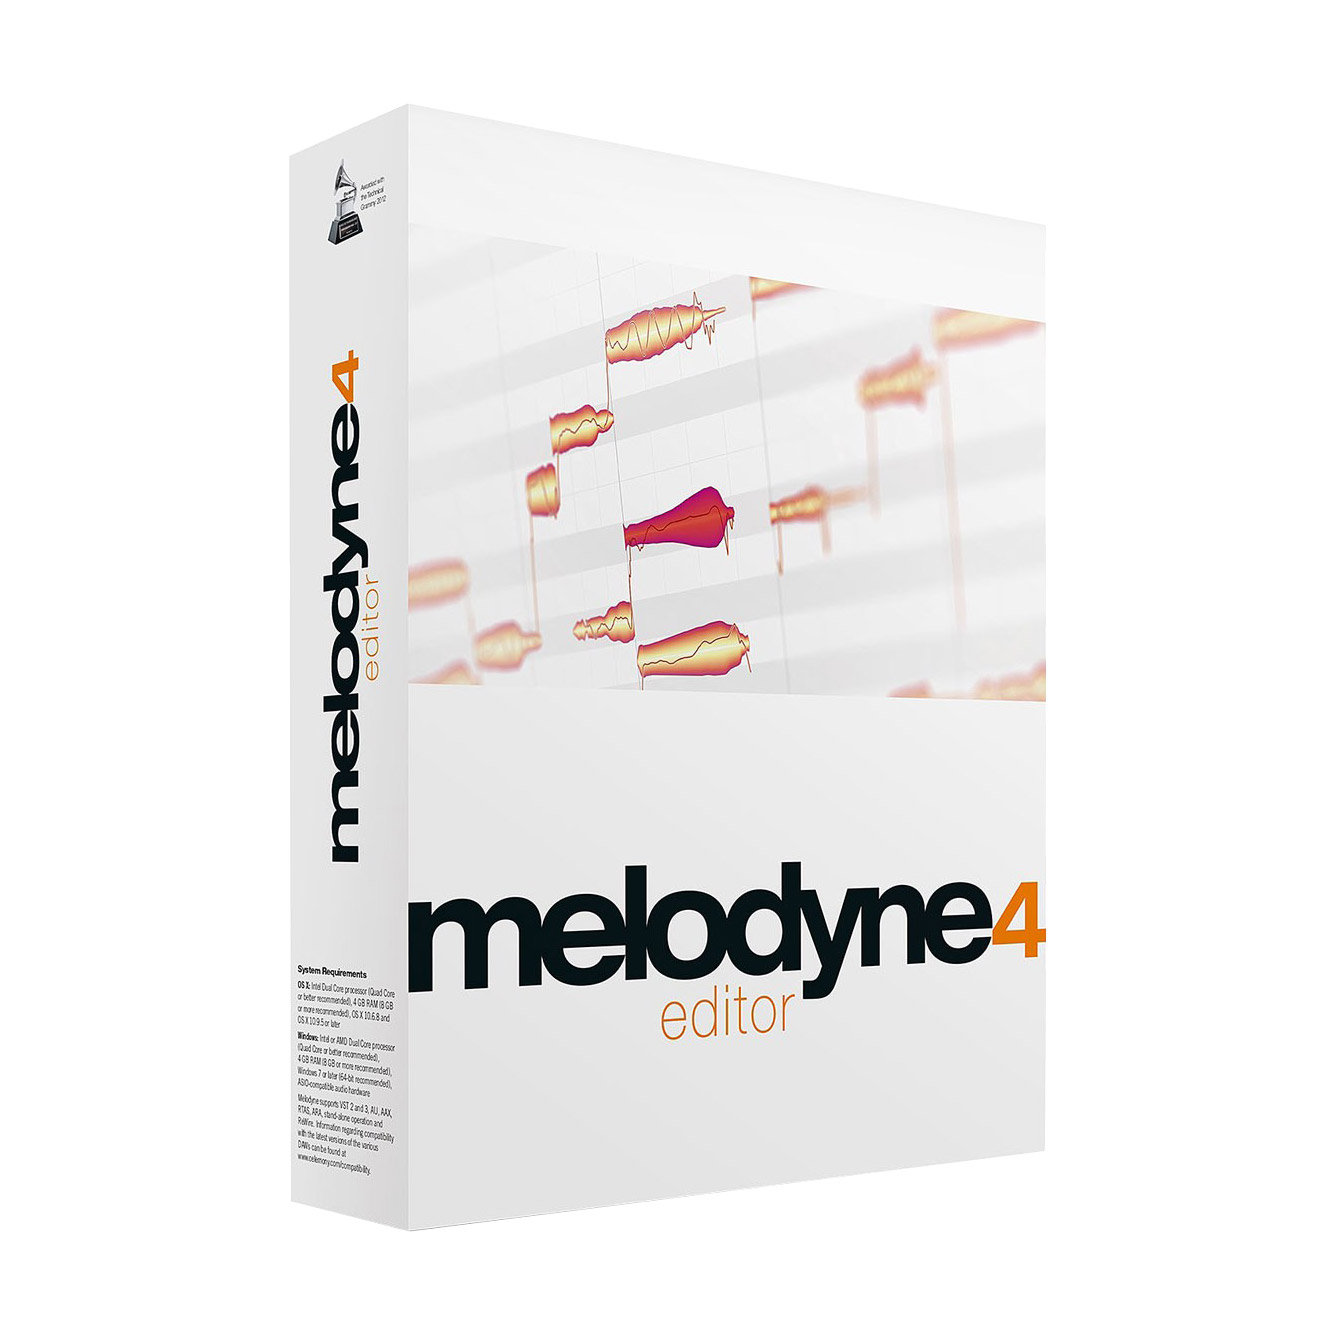 melodyne logic pro x download